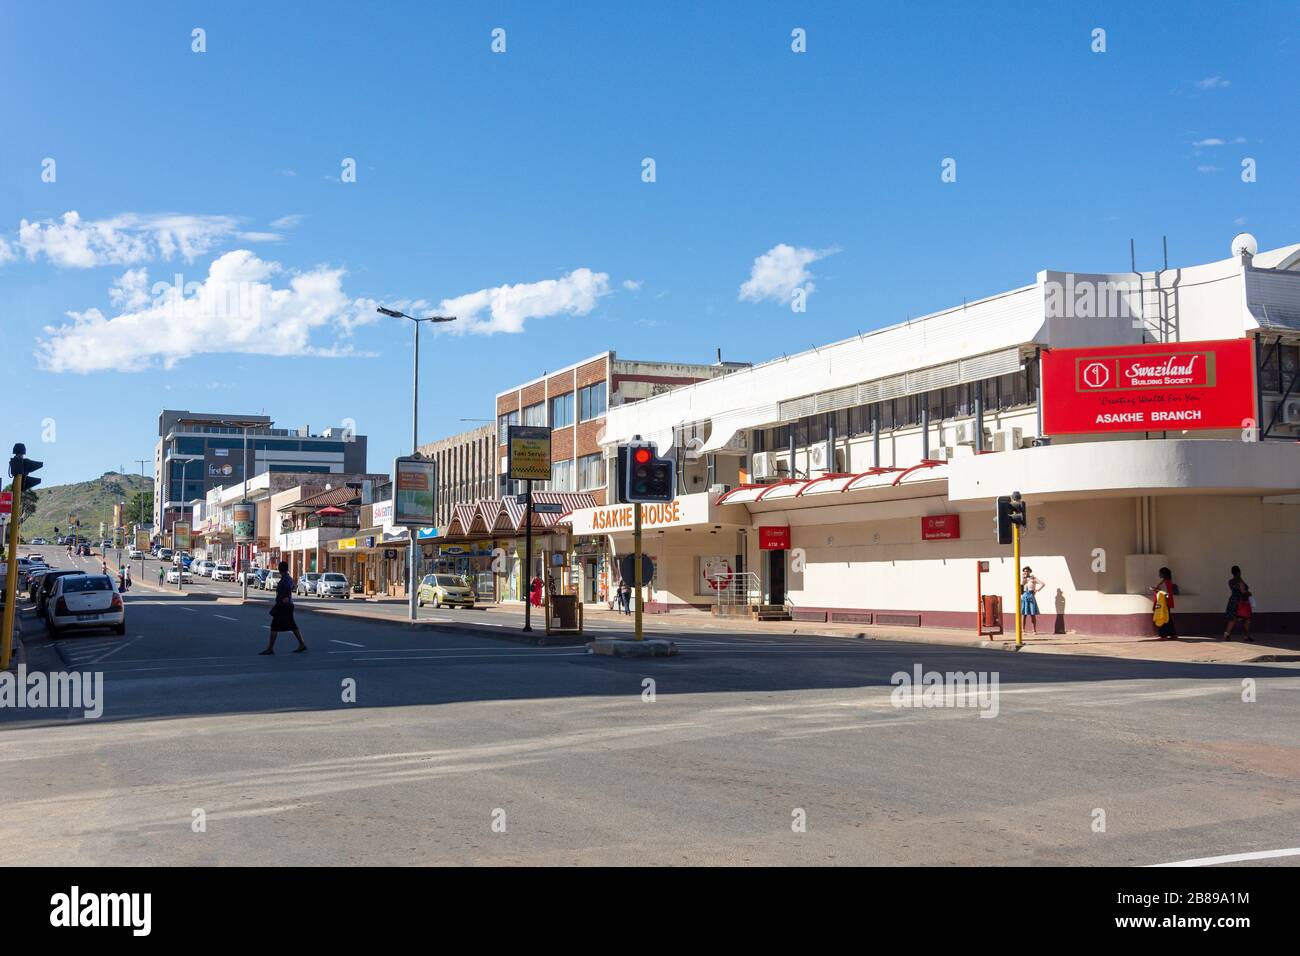 Gwamile Street dans le centre-ville, Mbabane, Royaume d'Eswatini (Swaziland) Banque D'Images